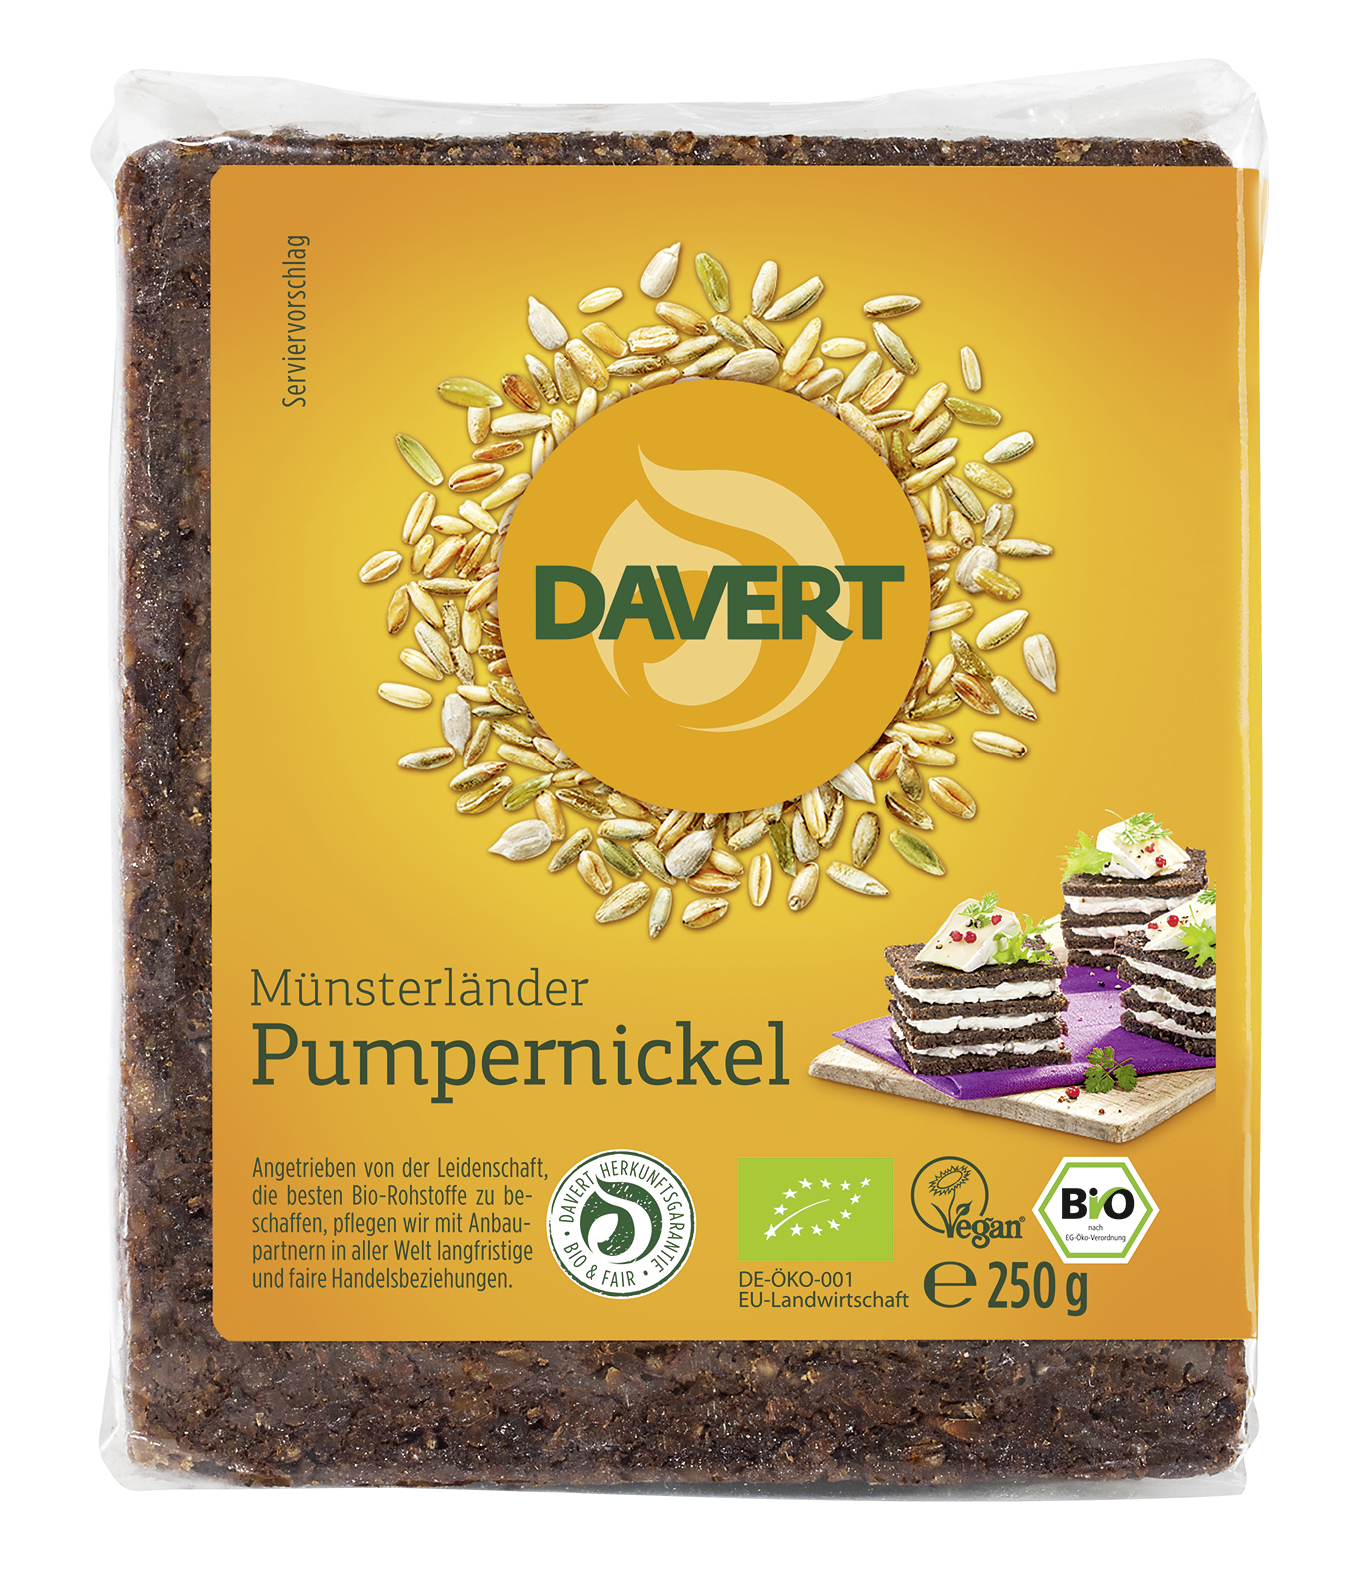 Pumpernickel 250g | Davert Online-Shop | Bio Naturkost